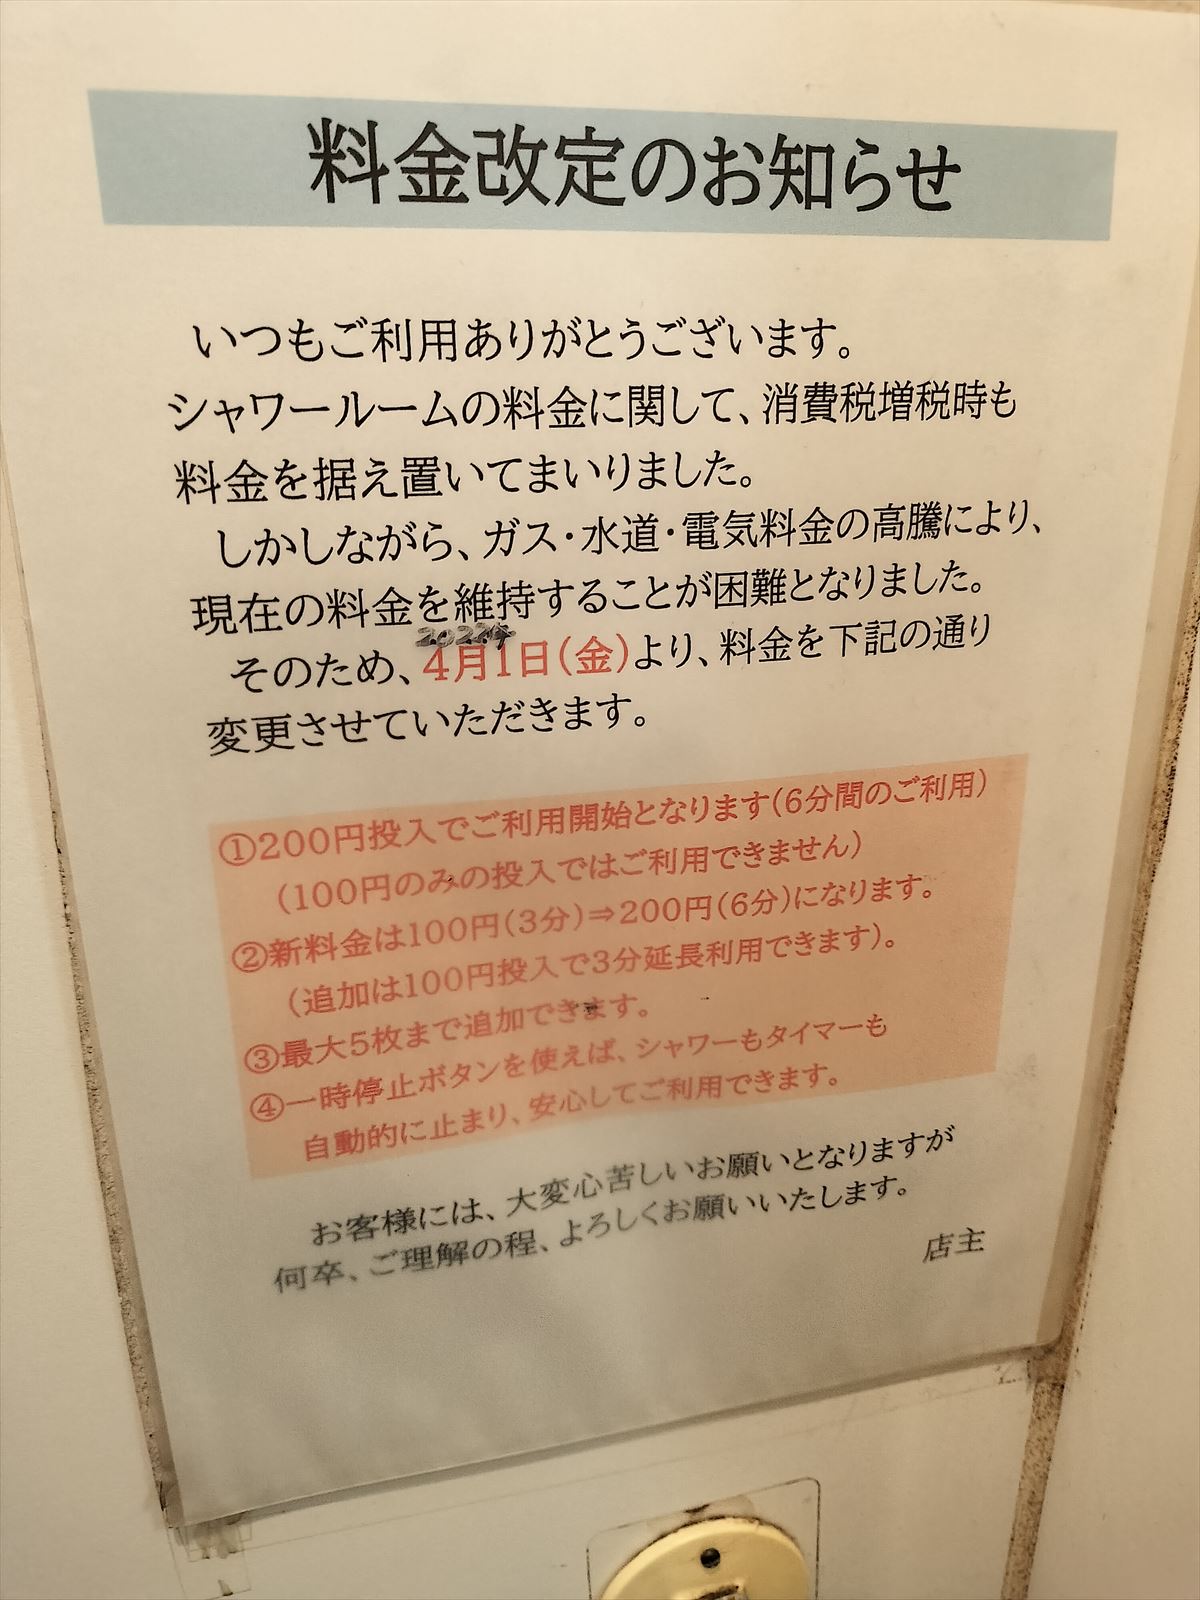 オードリーの聖地・モンキーシャワーで東京ドームチケット当選の願掛けをしてきた